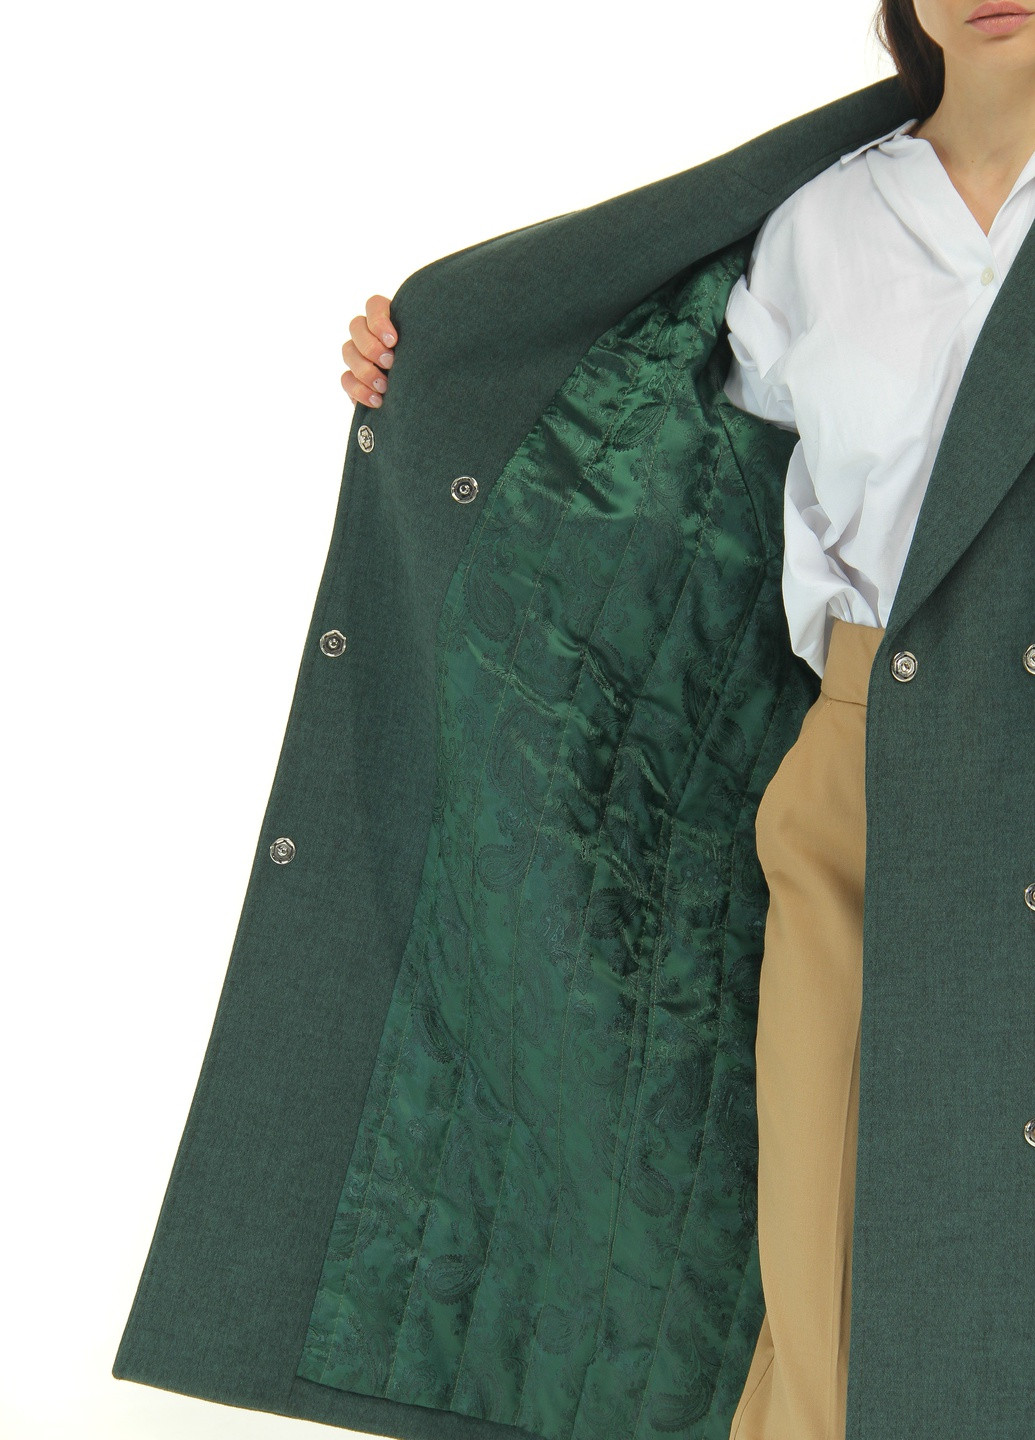 Зеленое Женское пальто жилет кашемир с натуральным мехом рекс весна лето осень демисезон пояс 4043 зеленый оверсайз Actors